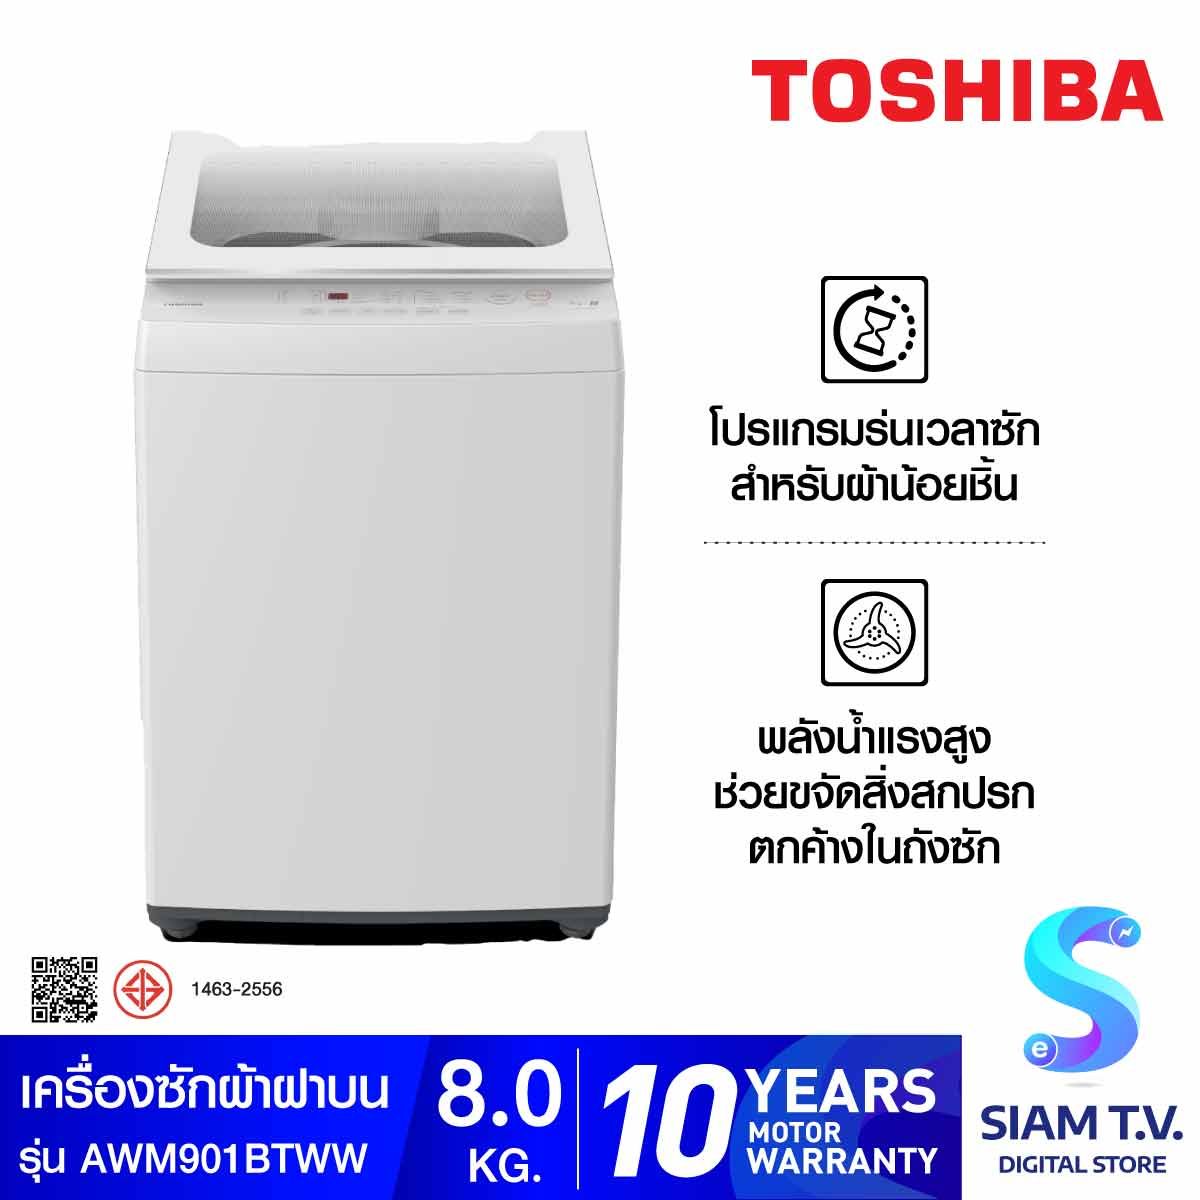 TOSHIBA เครื่องซักผ้าฝาบน 8KG สีขาว รุ่น AW-M901BT(WW)